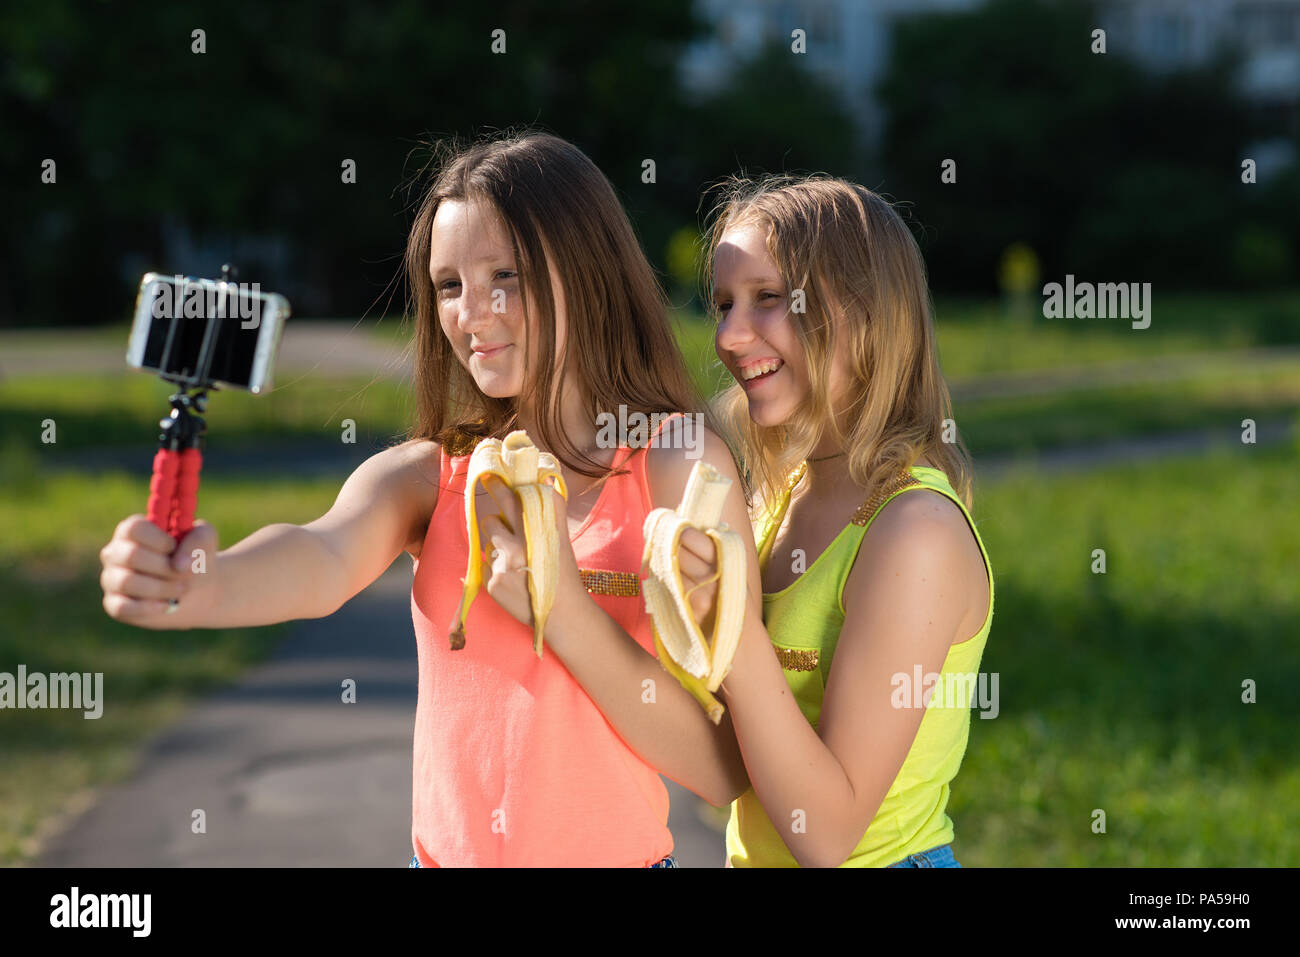 Zwei Mädchen Freundin, in einem Park in der Natur. In den Händen halten, Bananen. Videos auf dem Smartphone. Gefühle von Freude und Vergnügen. Das Konzept der Stockfoto